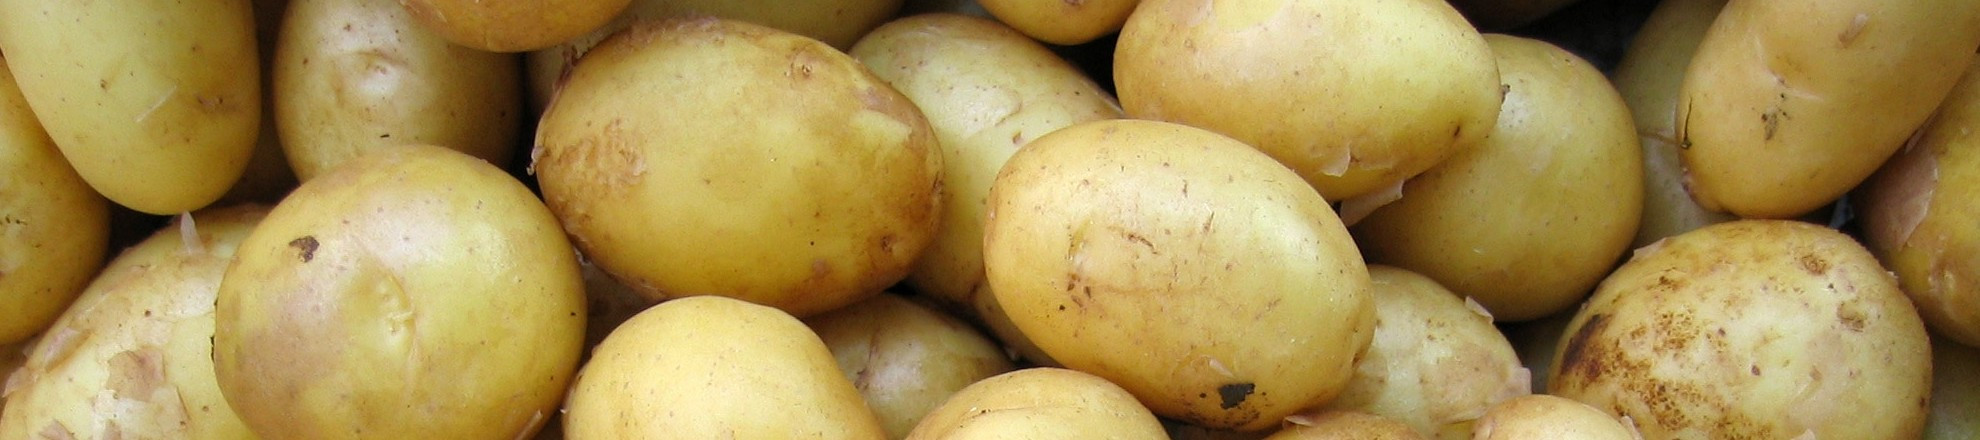 eiwittransitie aardappelen